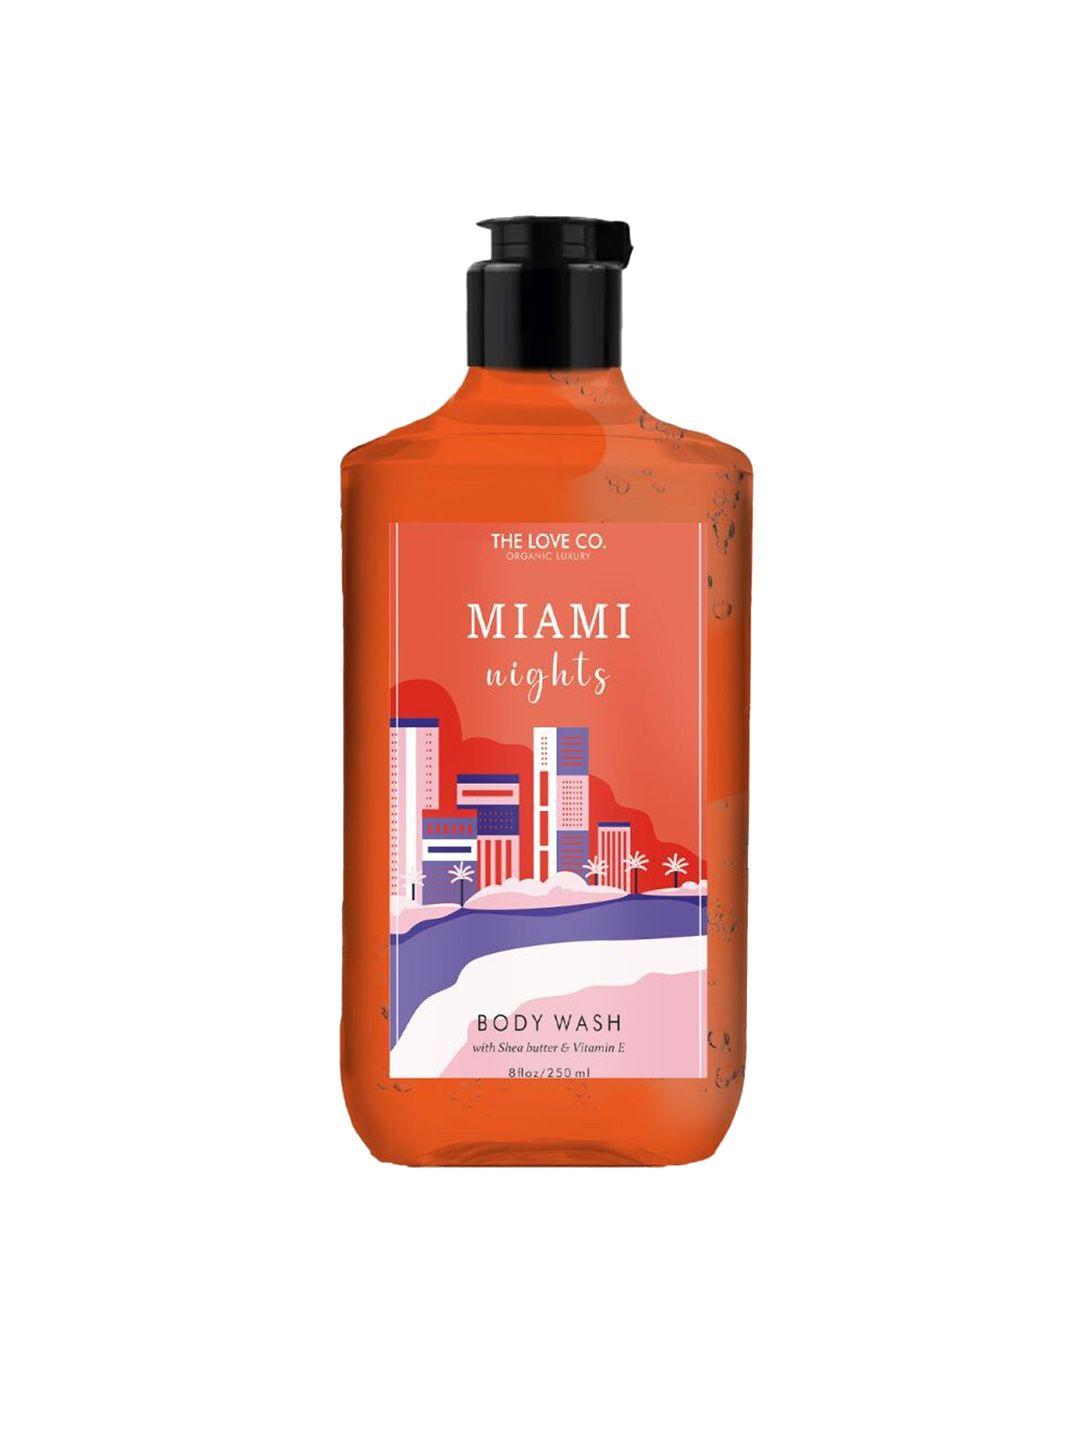 THE LOVE CO. Miami Nights Body Wash with Shea Butter & Vitamin E 250ml